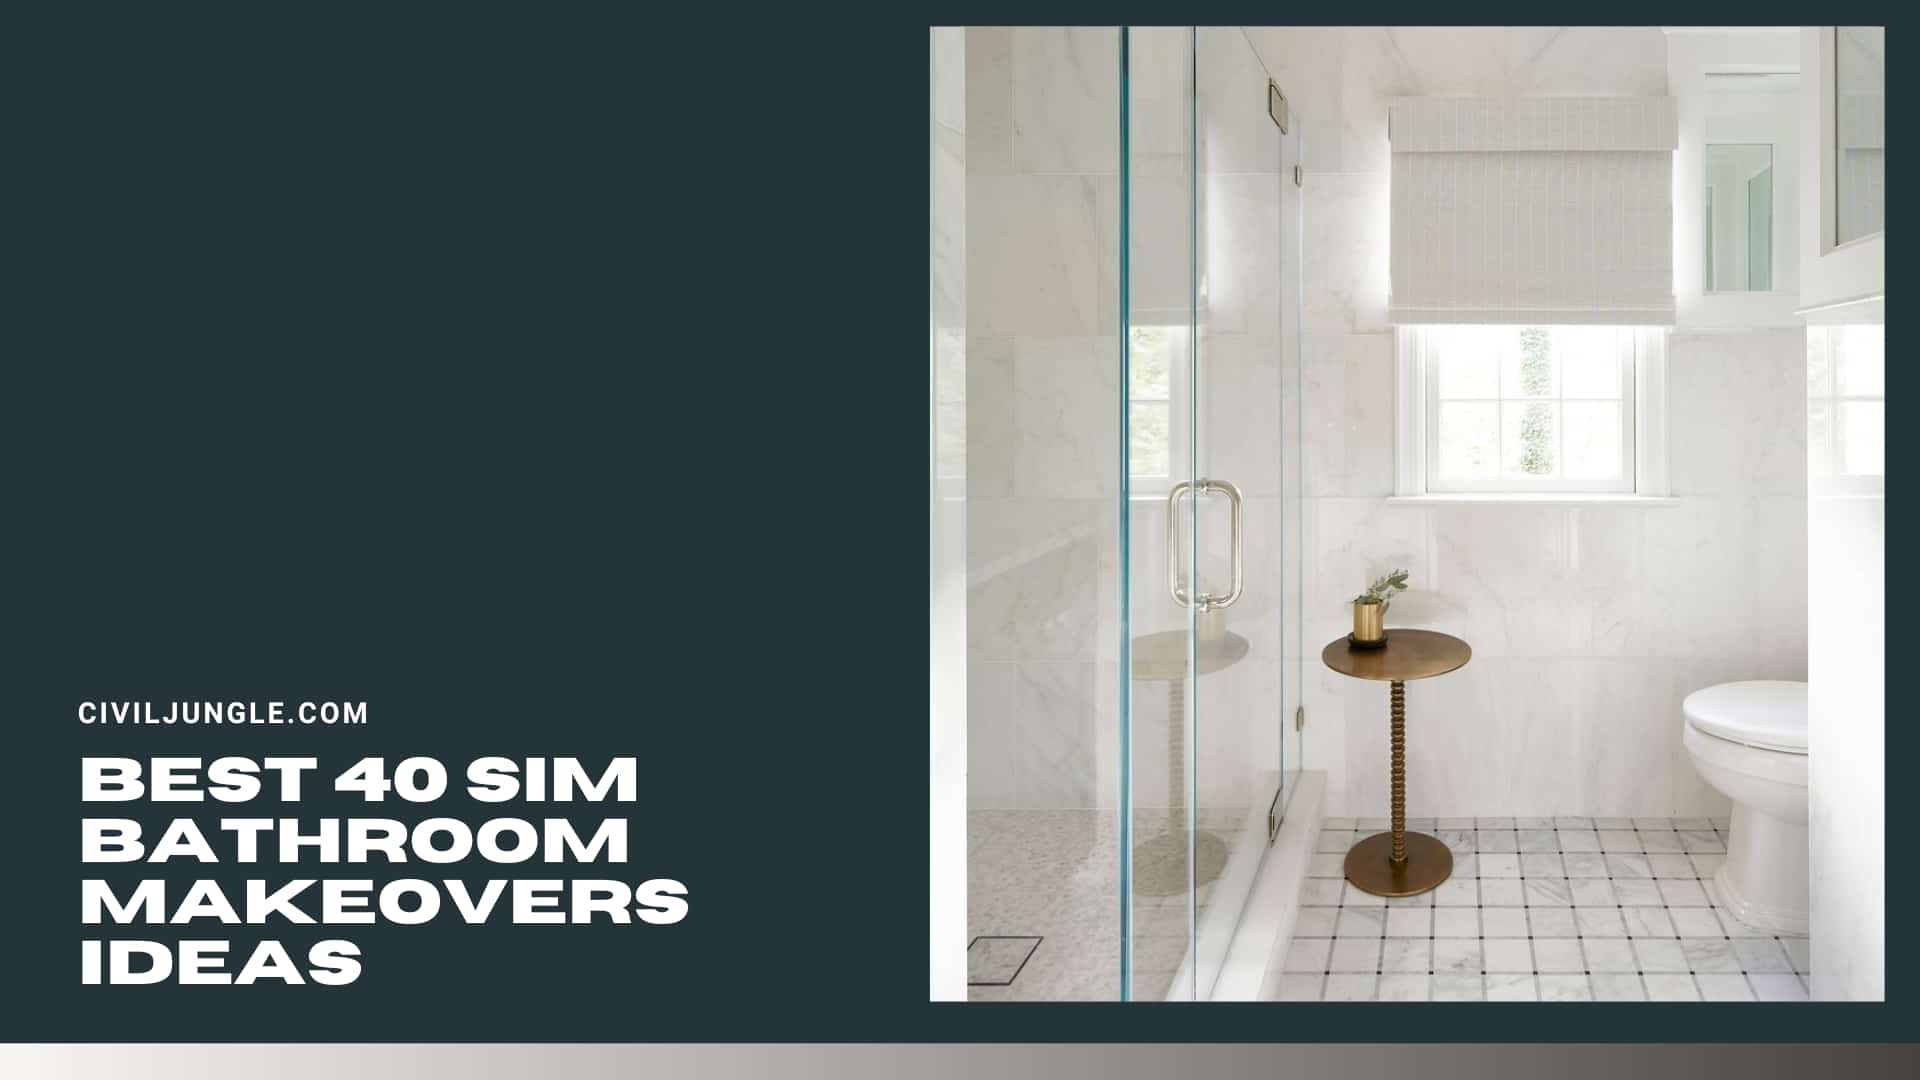 Best 40 Sim Bathroom Makeovers Ideas